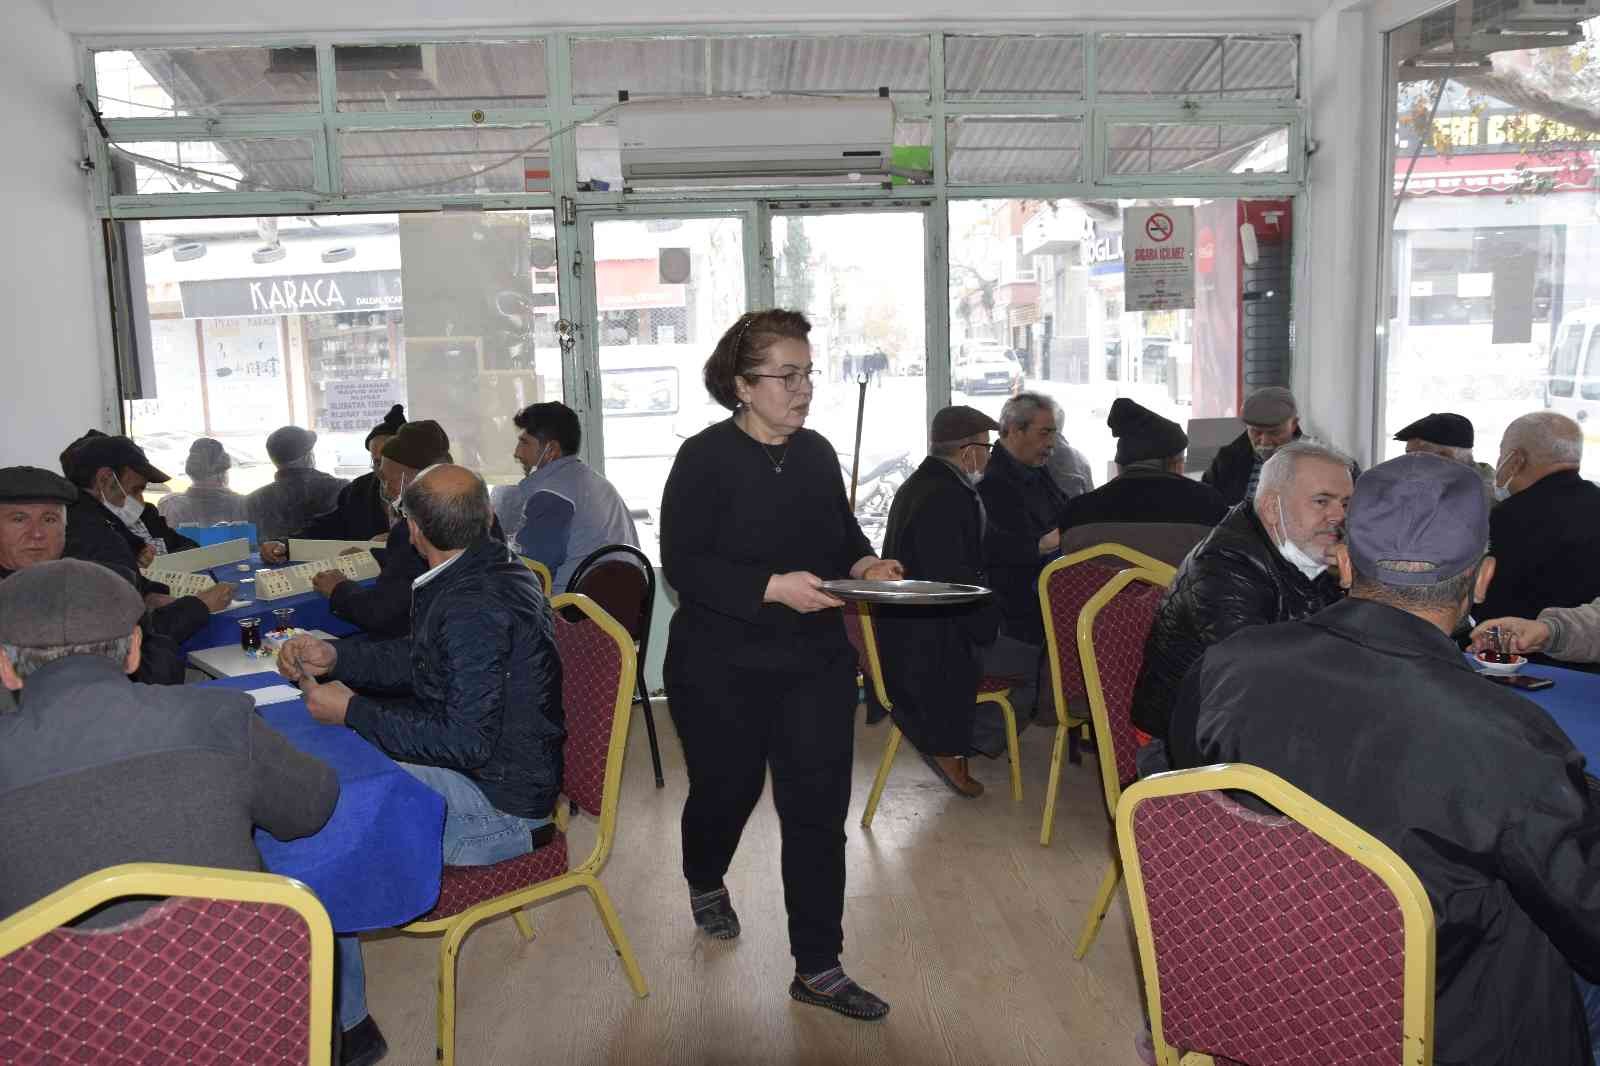 Burdurlu kadın gençlerin marka takıntısı sebebiyle iş yerini kapatıp kahvehane açtı #burdur